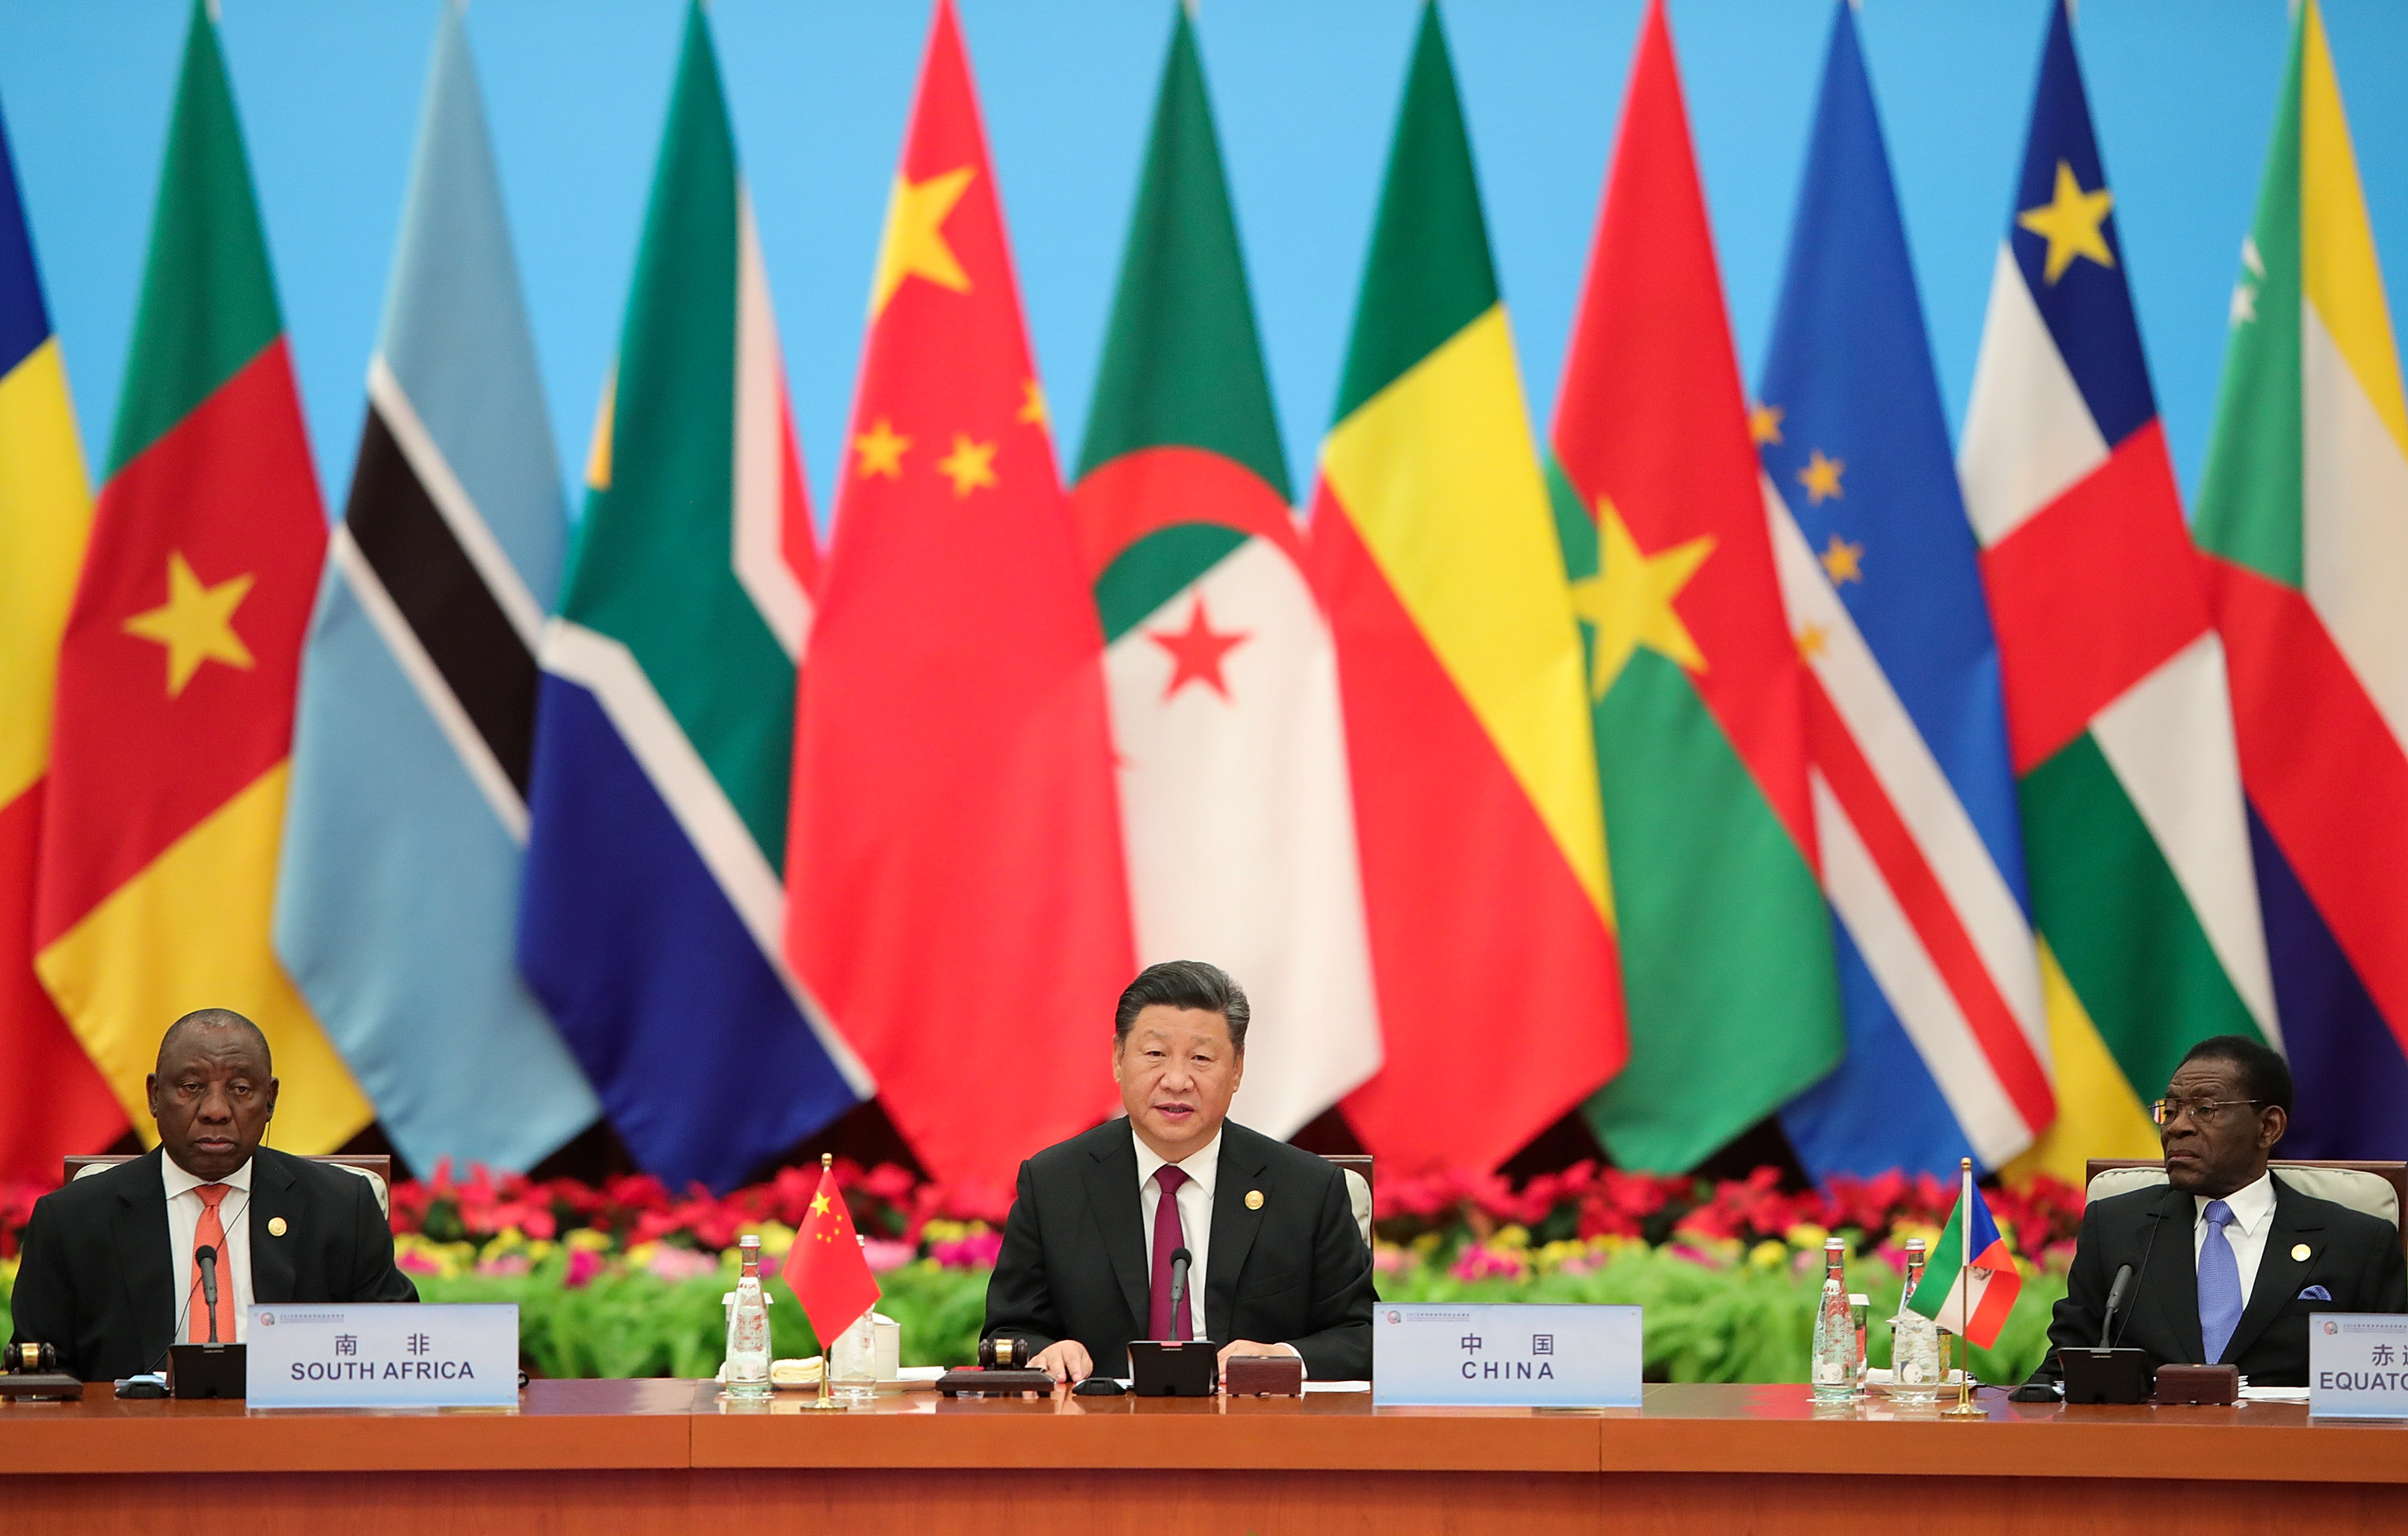 الرئيس الصيني يتحدث إلى جانب رئيس جنوب أفريقيا خلال قمة بكين